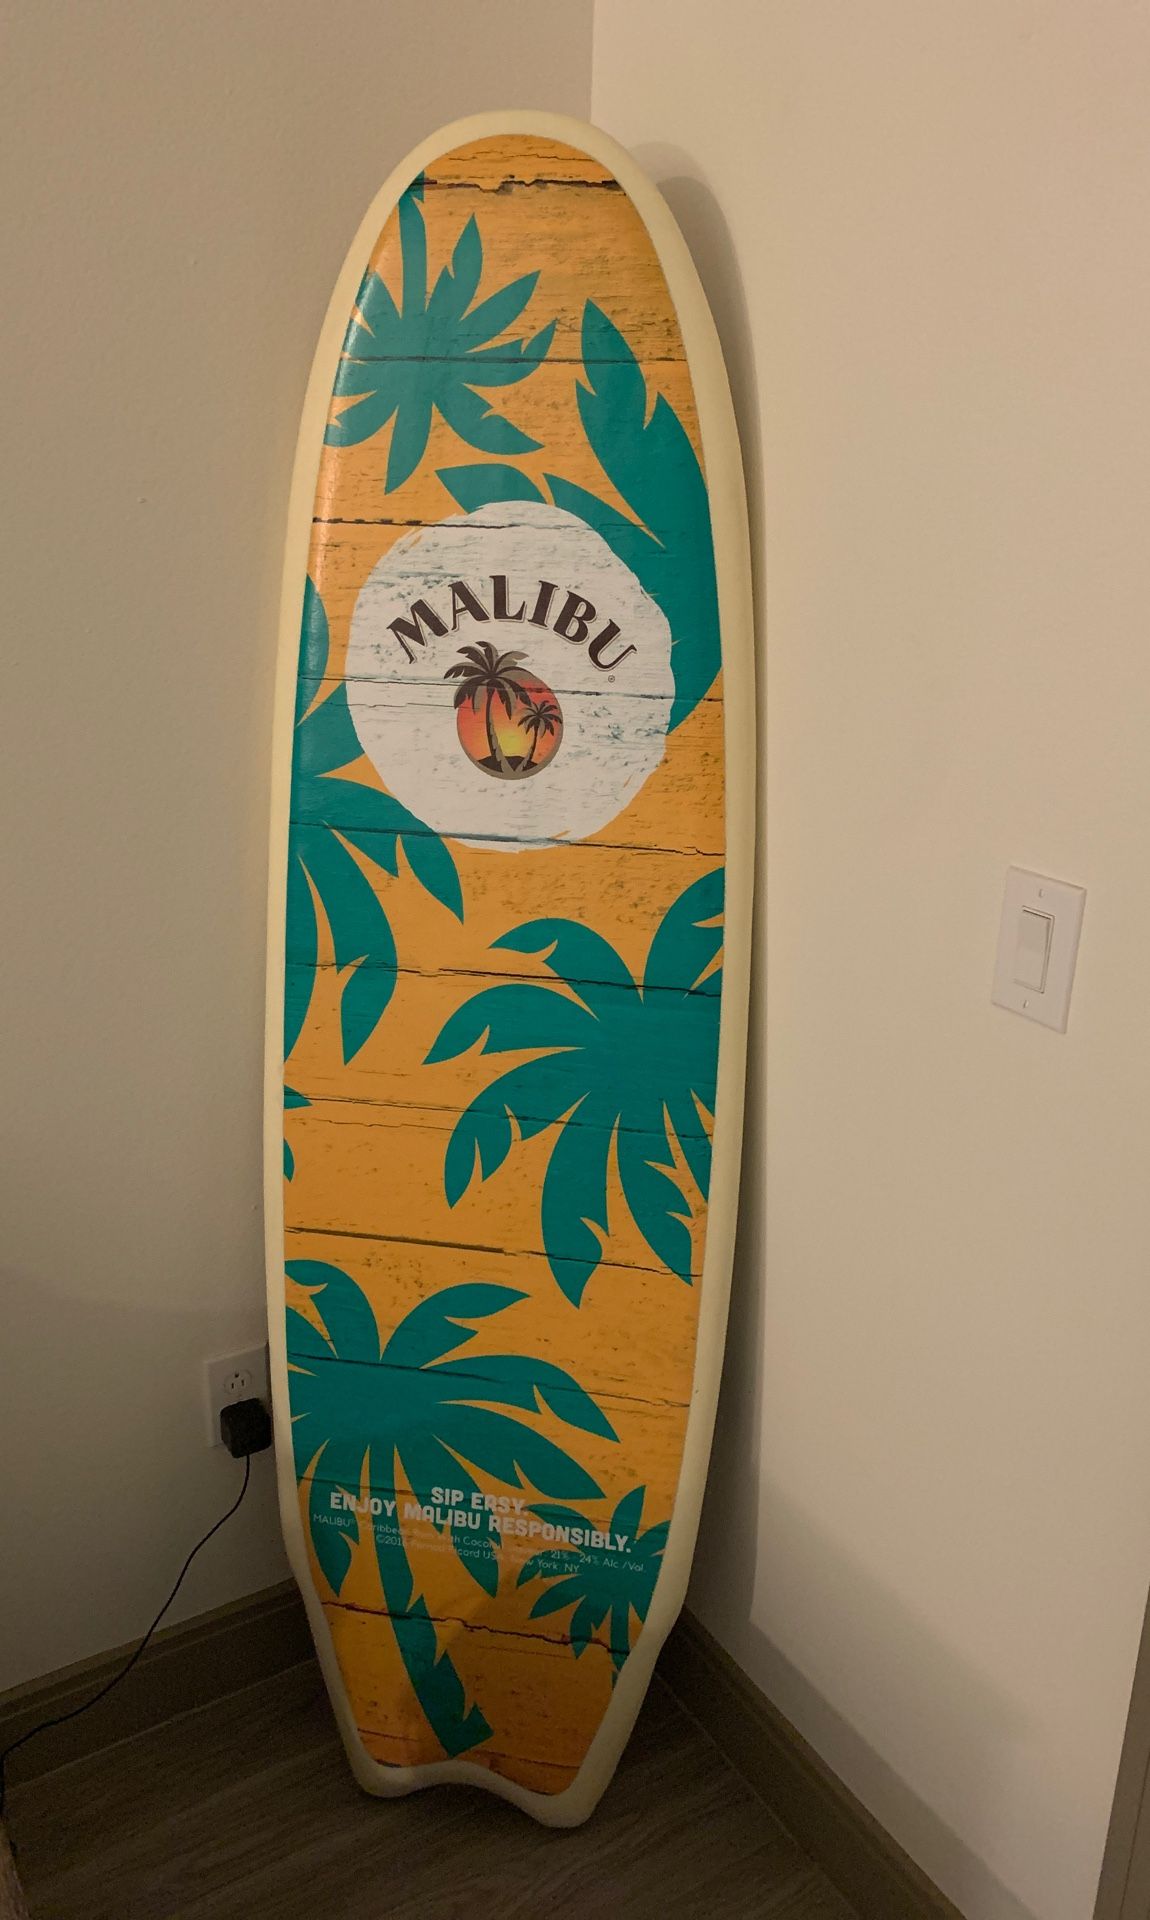 Malibu Surfboard - 6.5 feet long